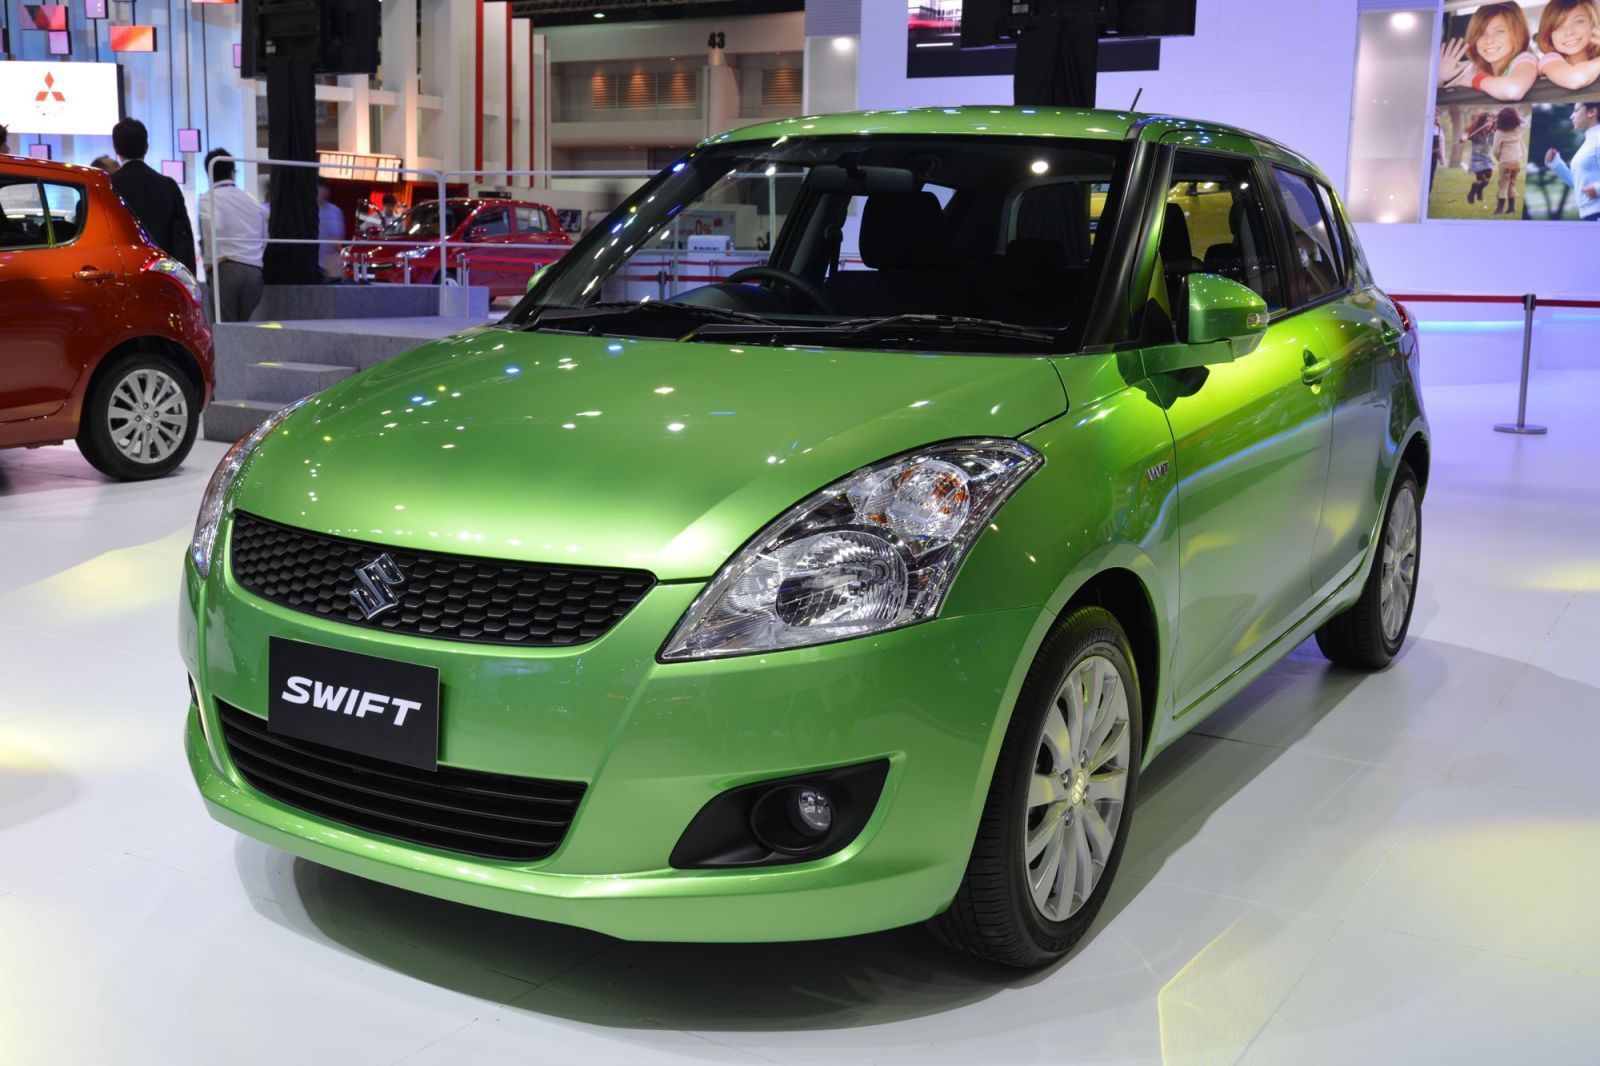 Suzuki Swift - Energy Green Shade